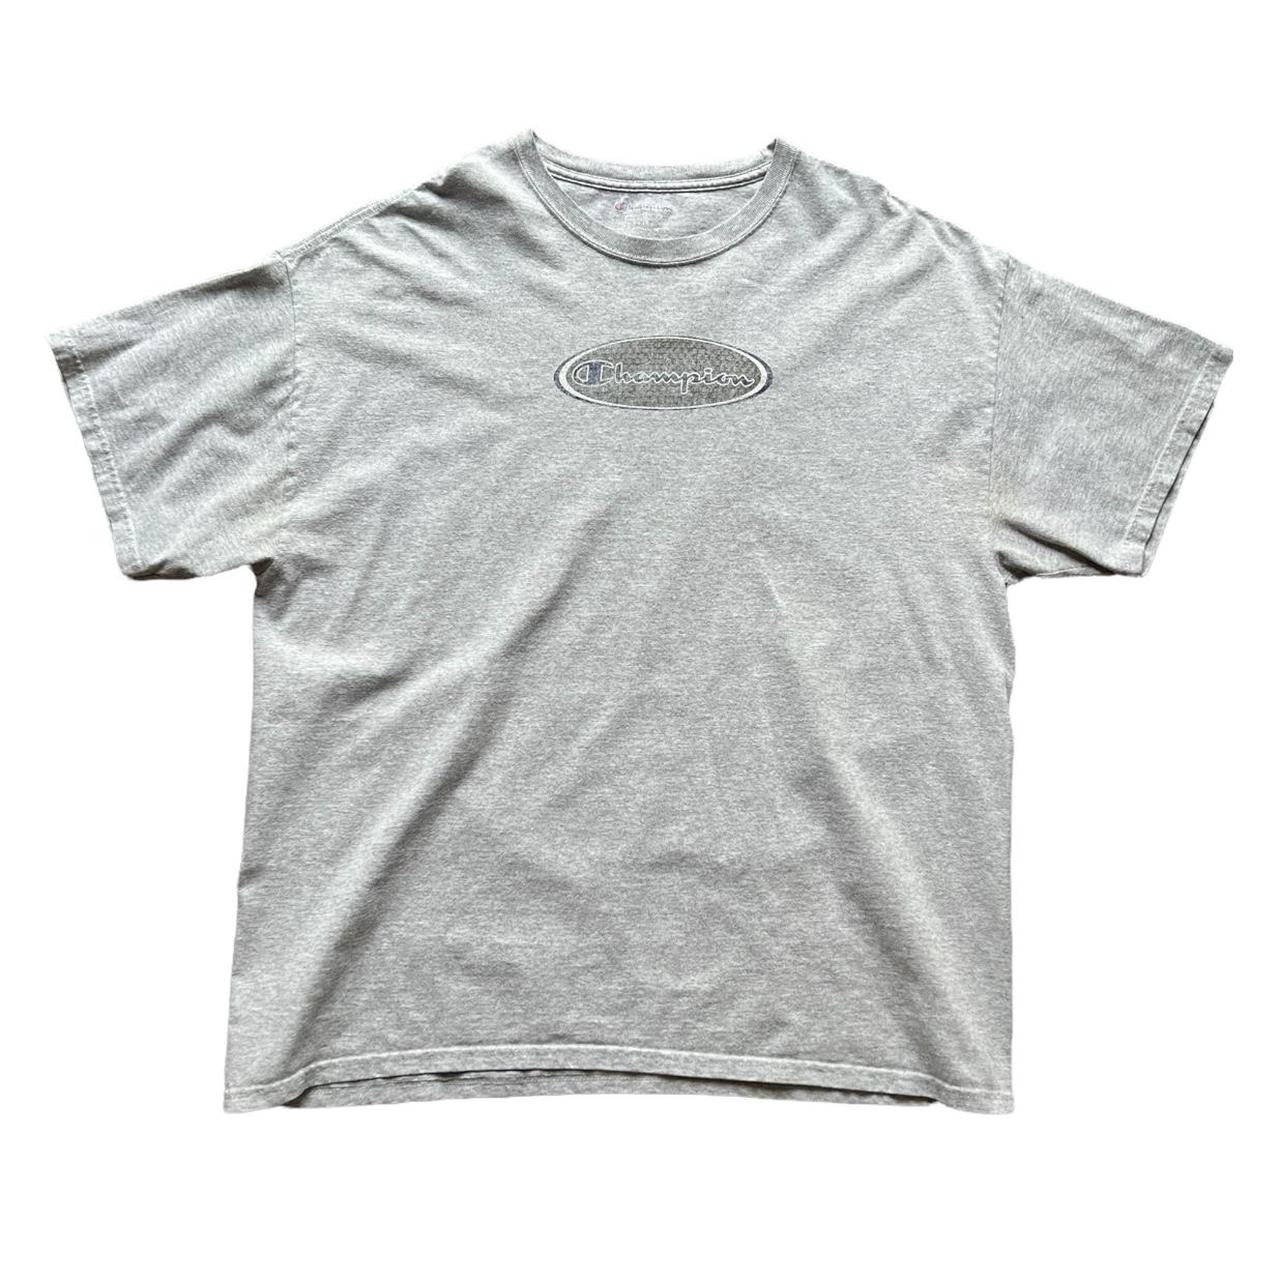 Champion Light Grey Spellout T-Shirt. Good... - Depop